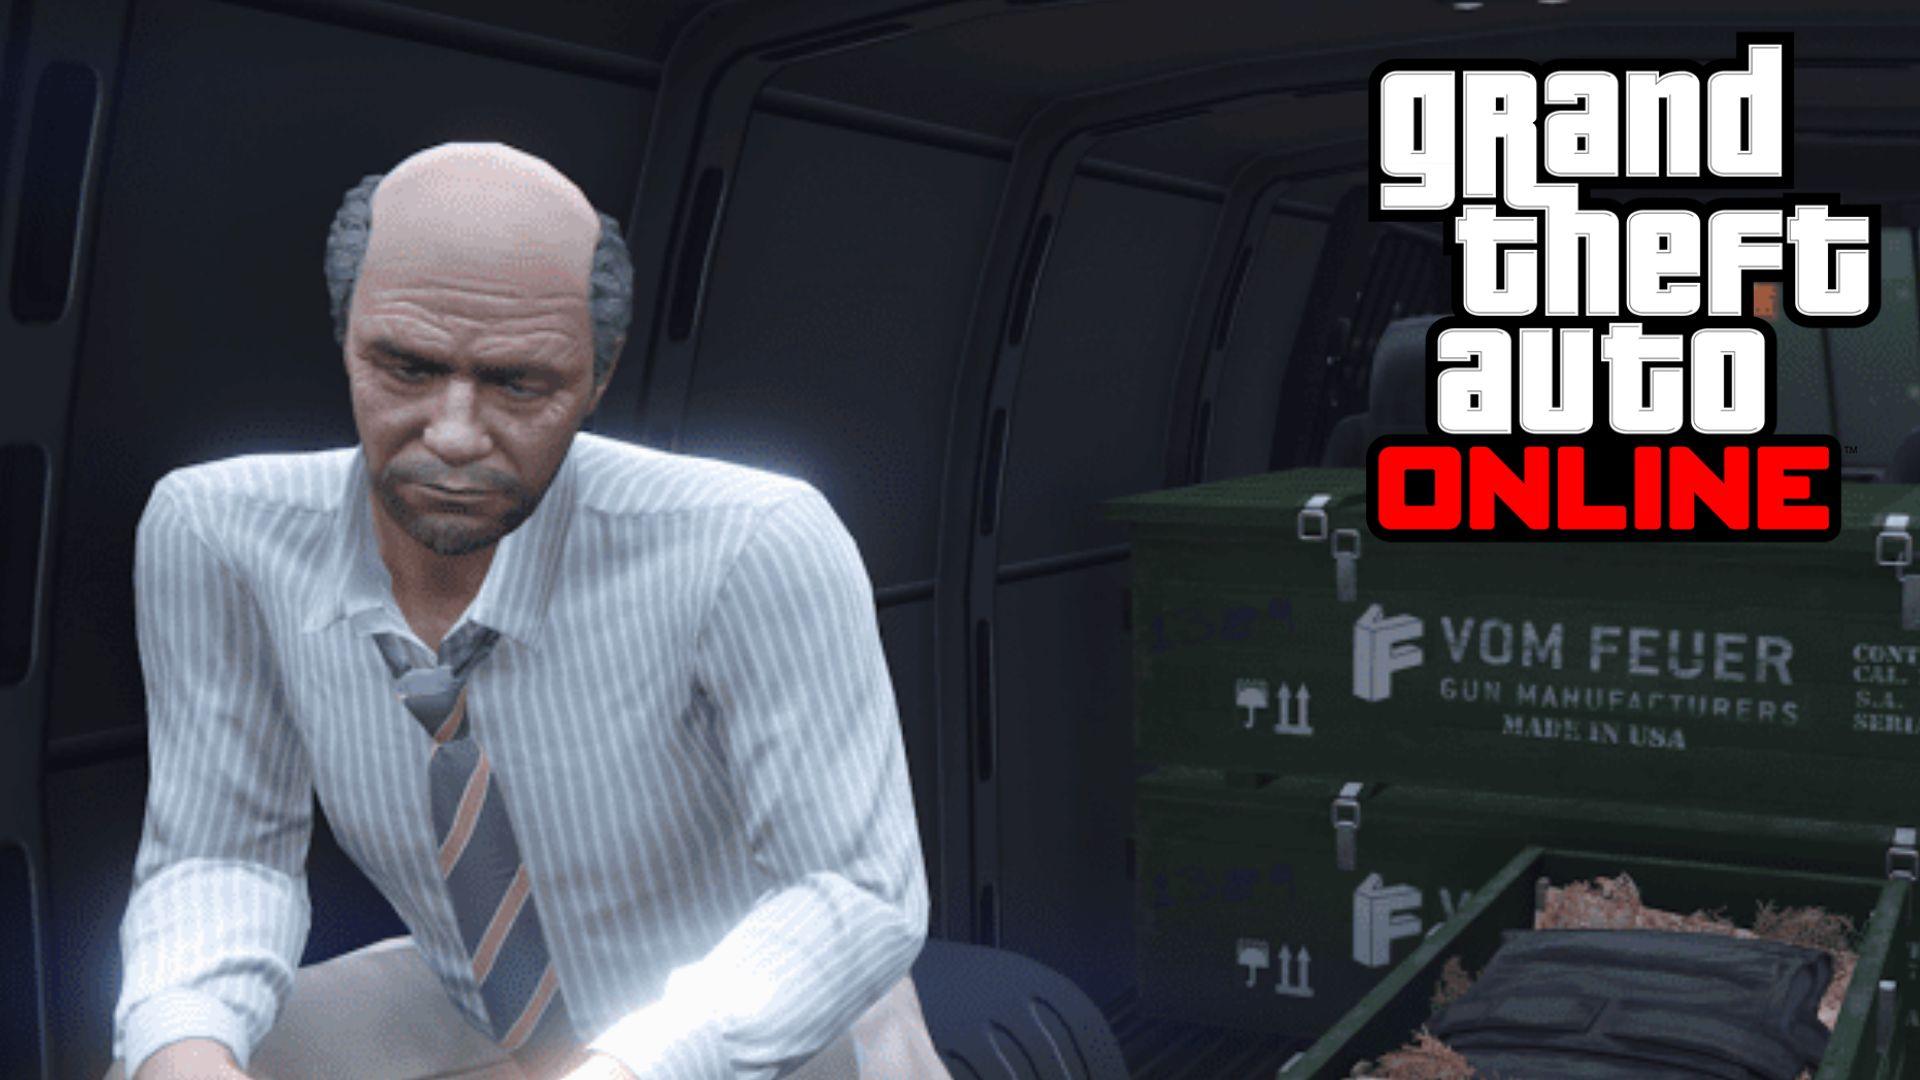 GTA online Gun Van seller sitting in van